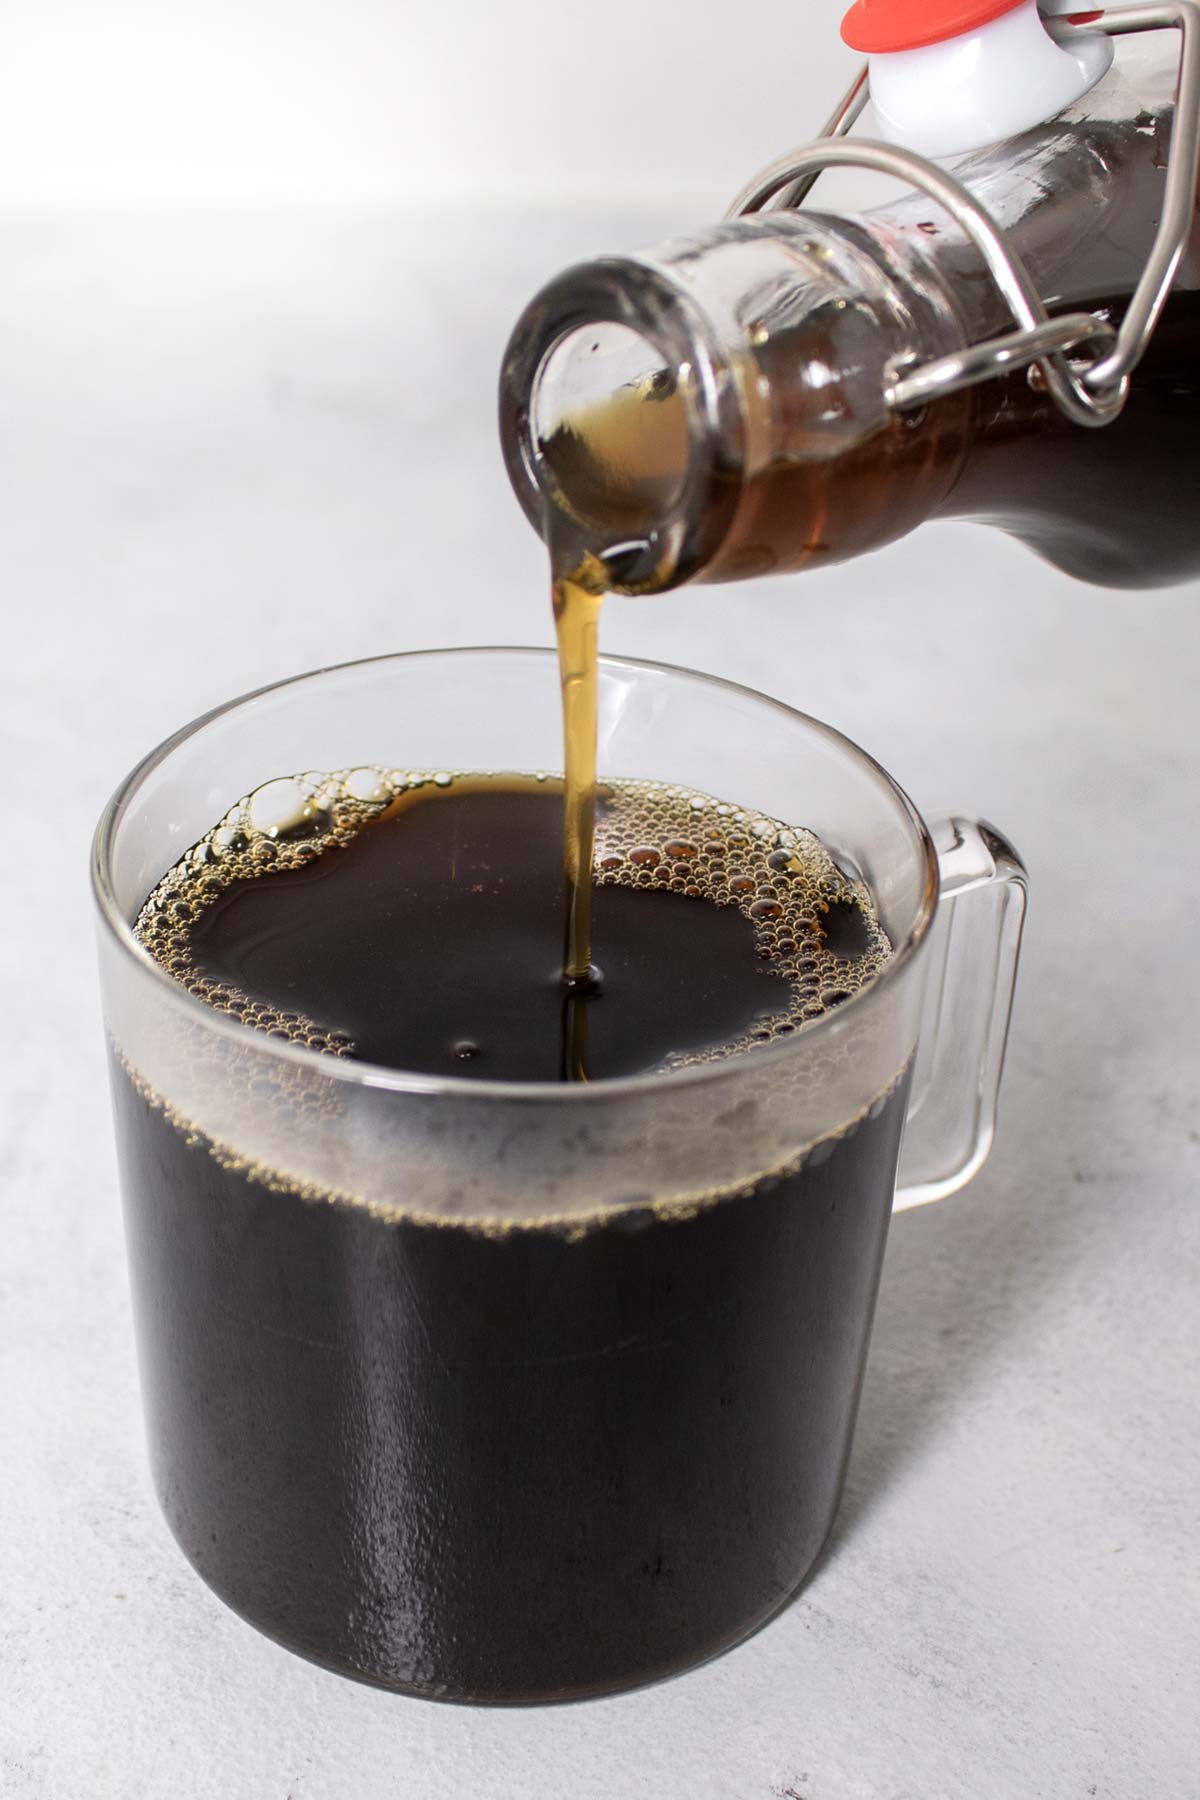 Bruine suikersiroop in een kopje koffie gieten.